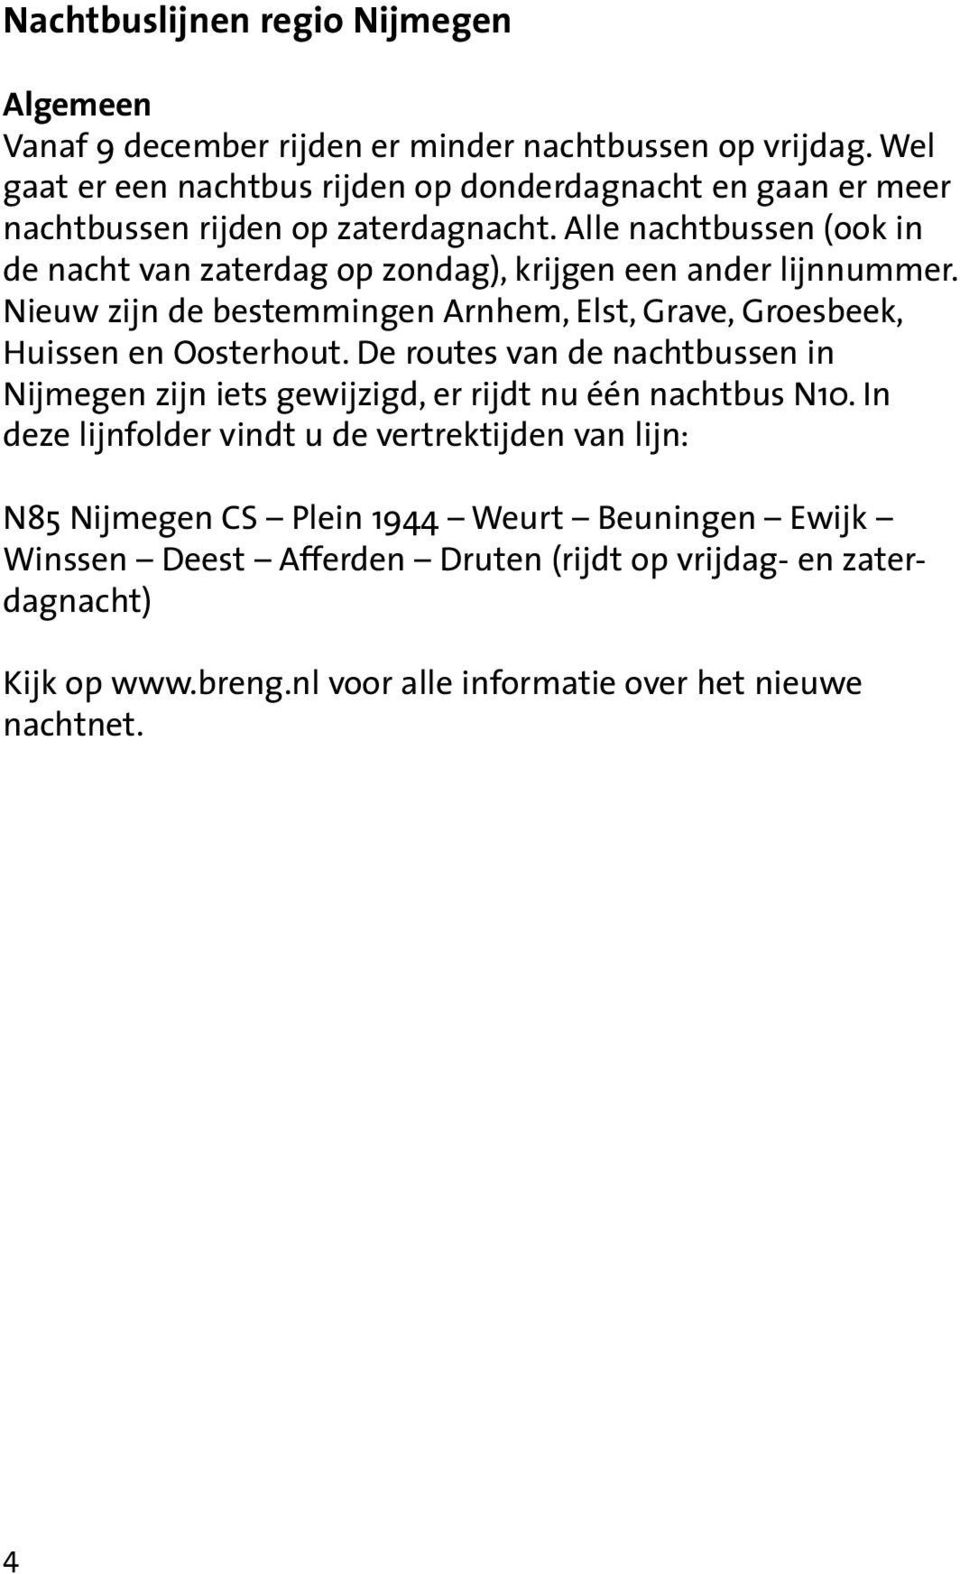 Alle nachtbussen (ook in de nacht van zaterdag op zondag), krijgen een ander lijnnummer. Nieuw zijn de bestemmingen Arnhem, Elst, Grave, Groesbeek, Huissen en Oosterhout.